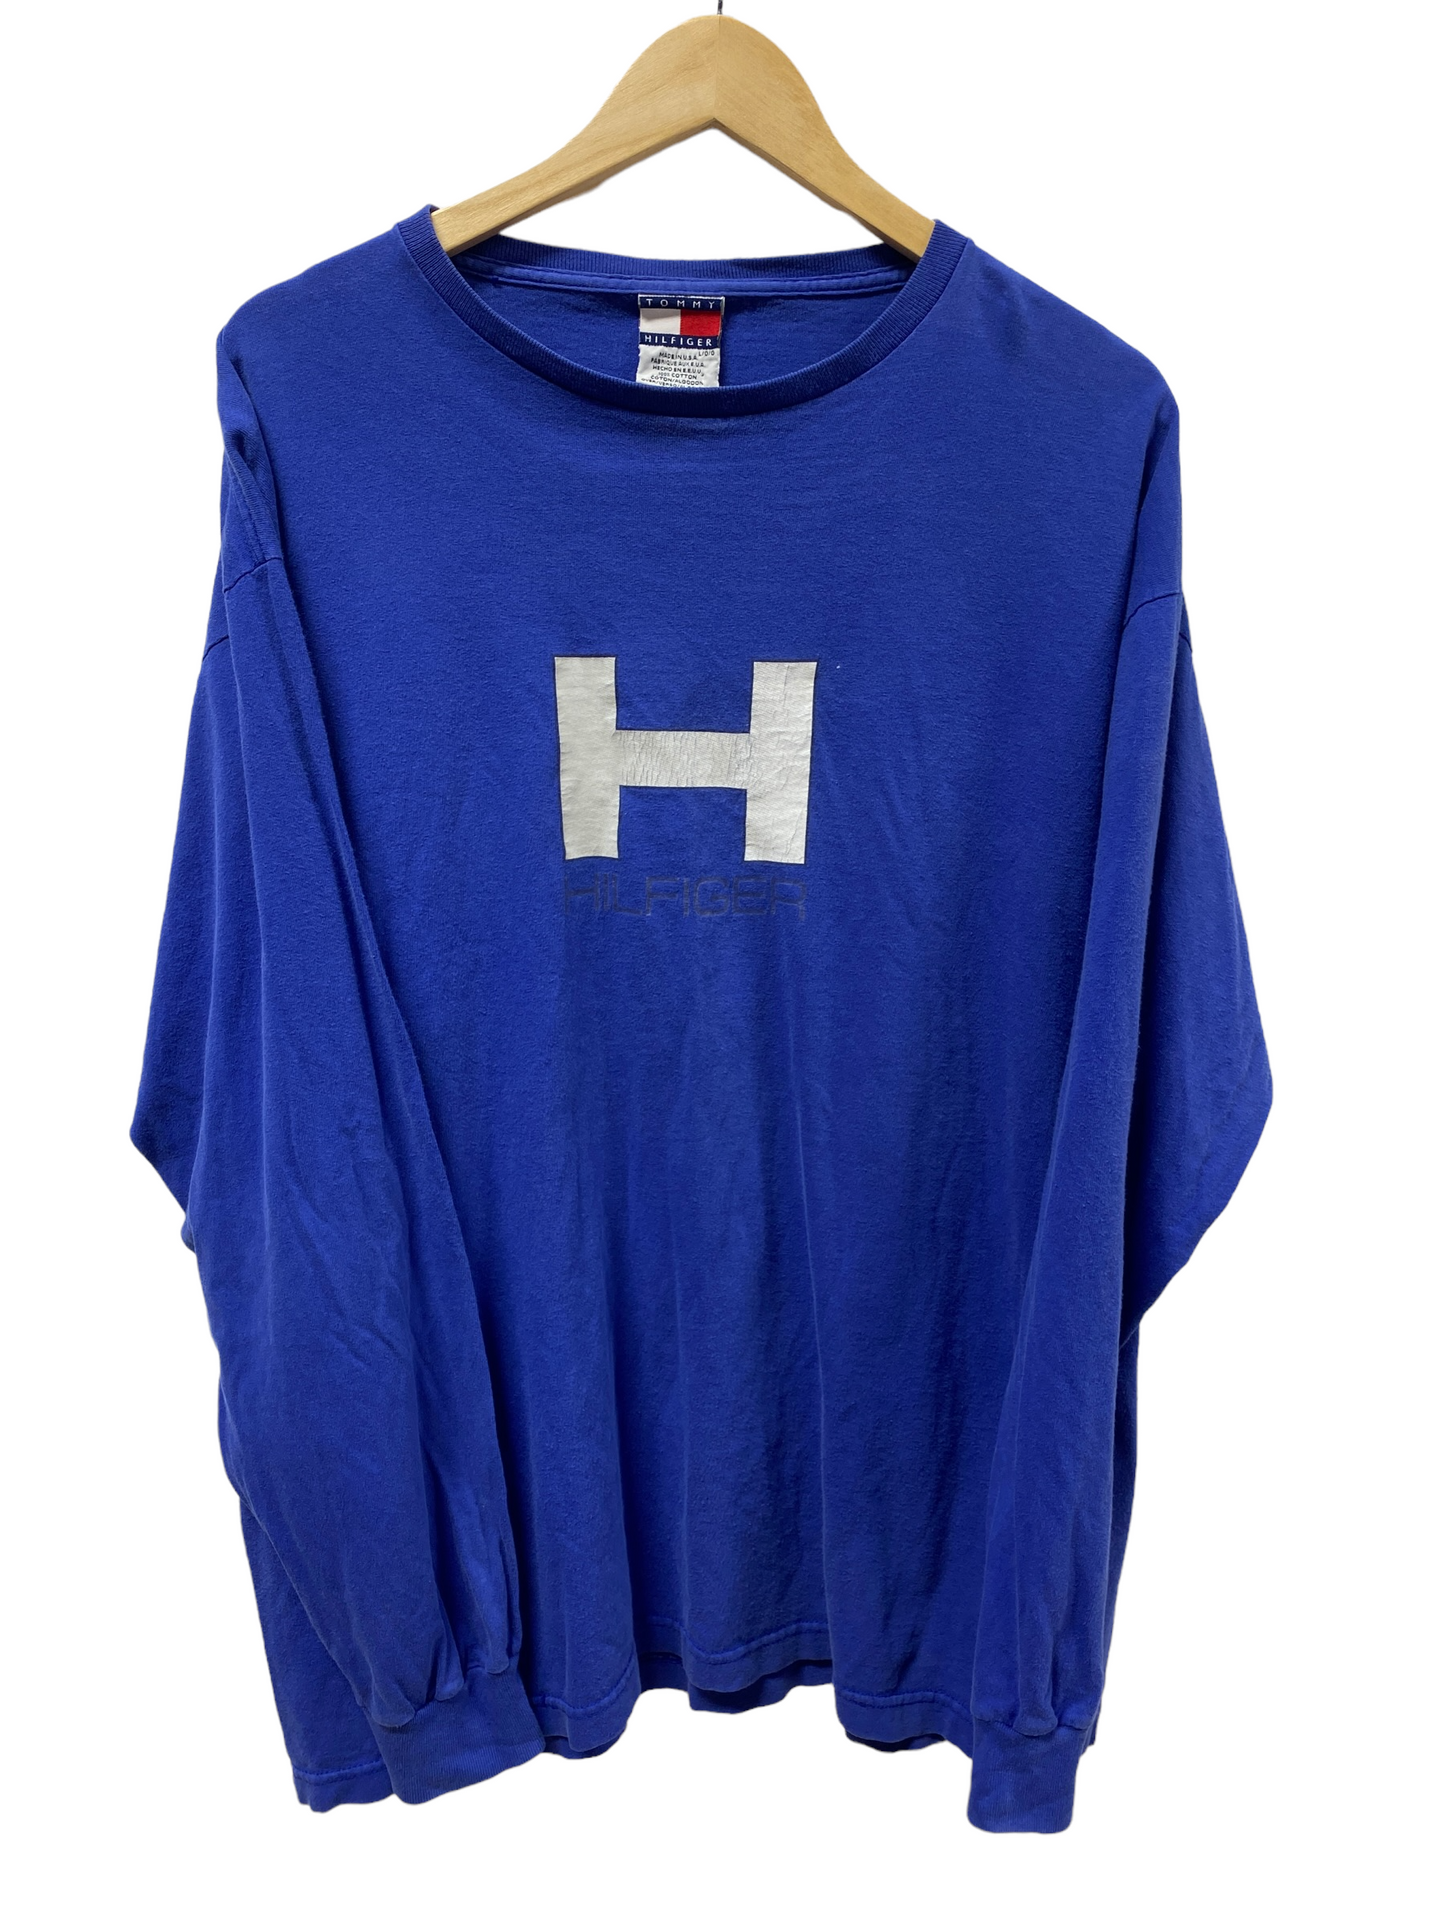 Vintage 90's Tomy Hilfiger Big H Long Sleeve Shirt Size Large